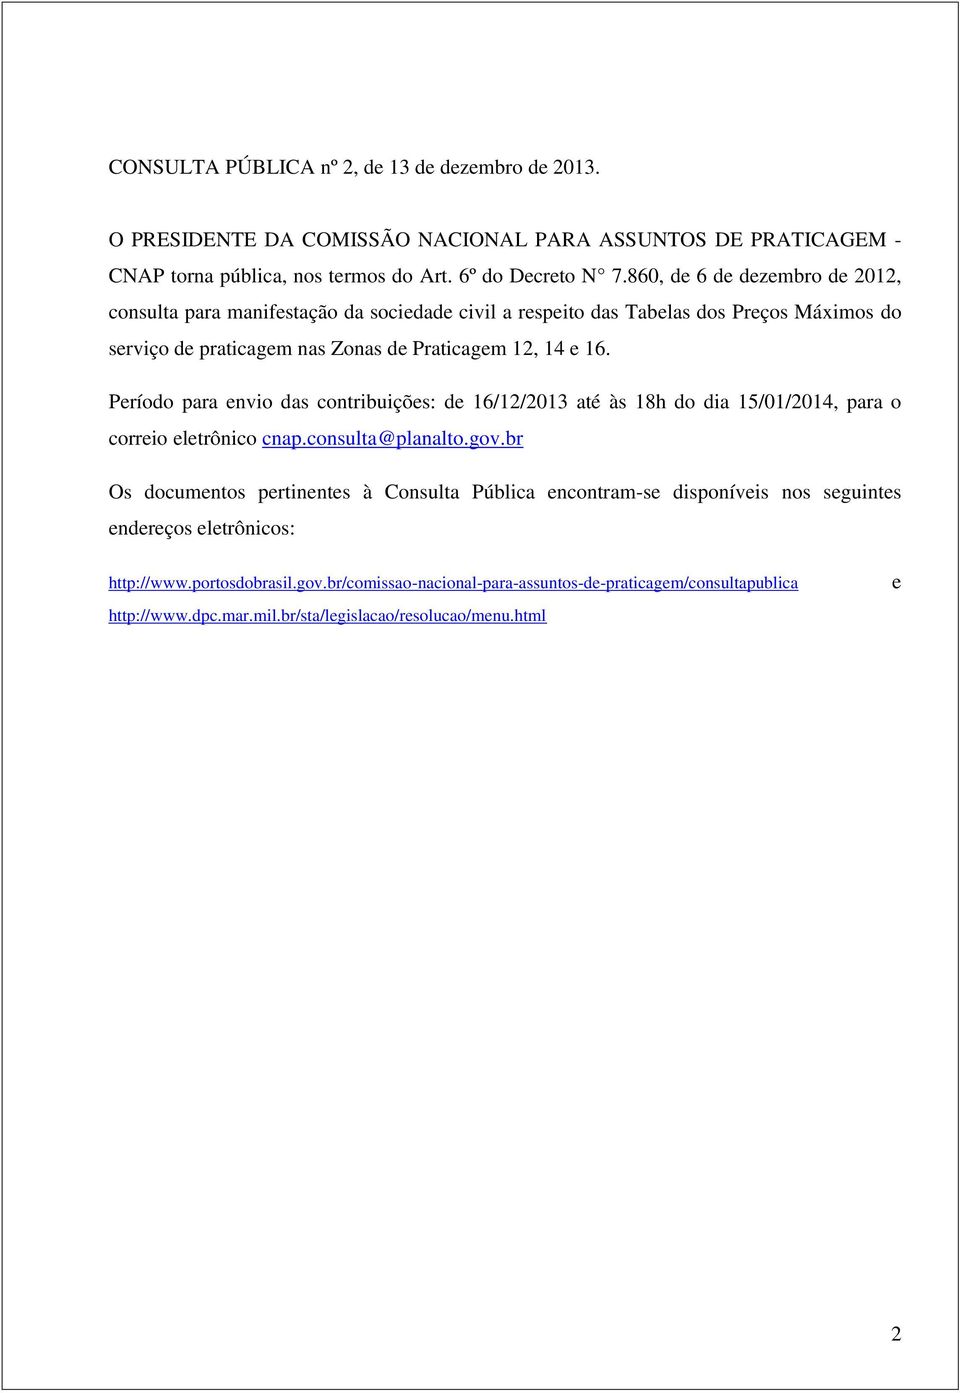 Período para envio das contribuições: de 16/12/2013 até às 18h do dia 15/01/2014, para o correio eletrônico cnap.consulta@planalto.gov.